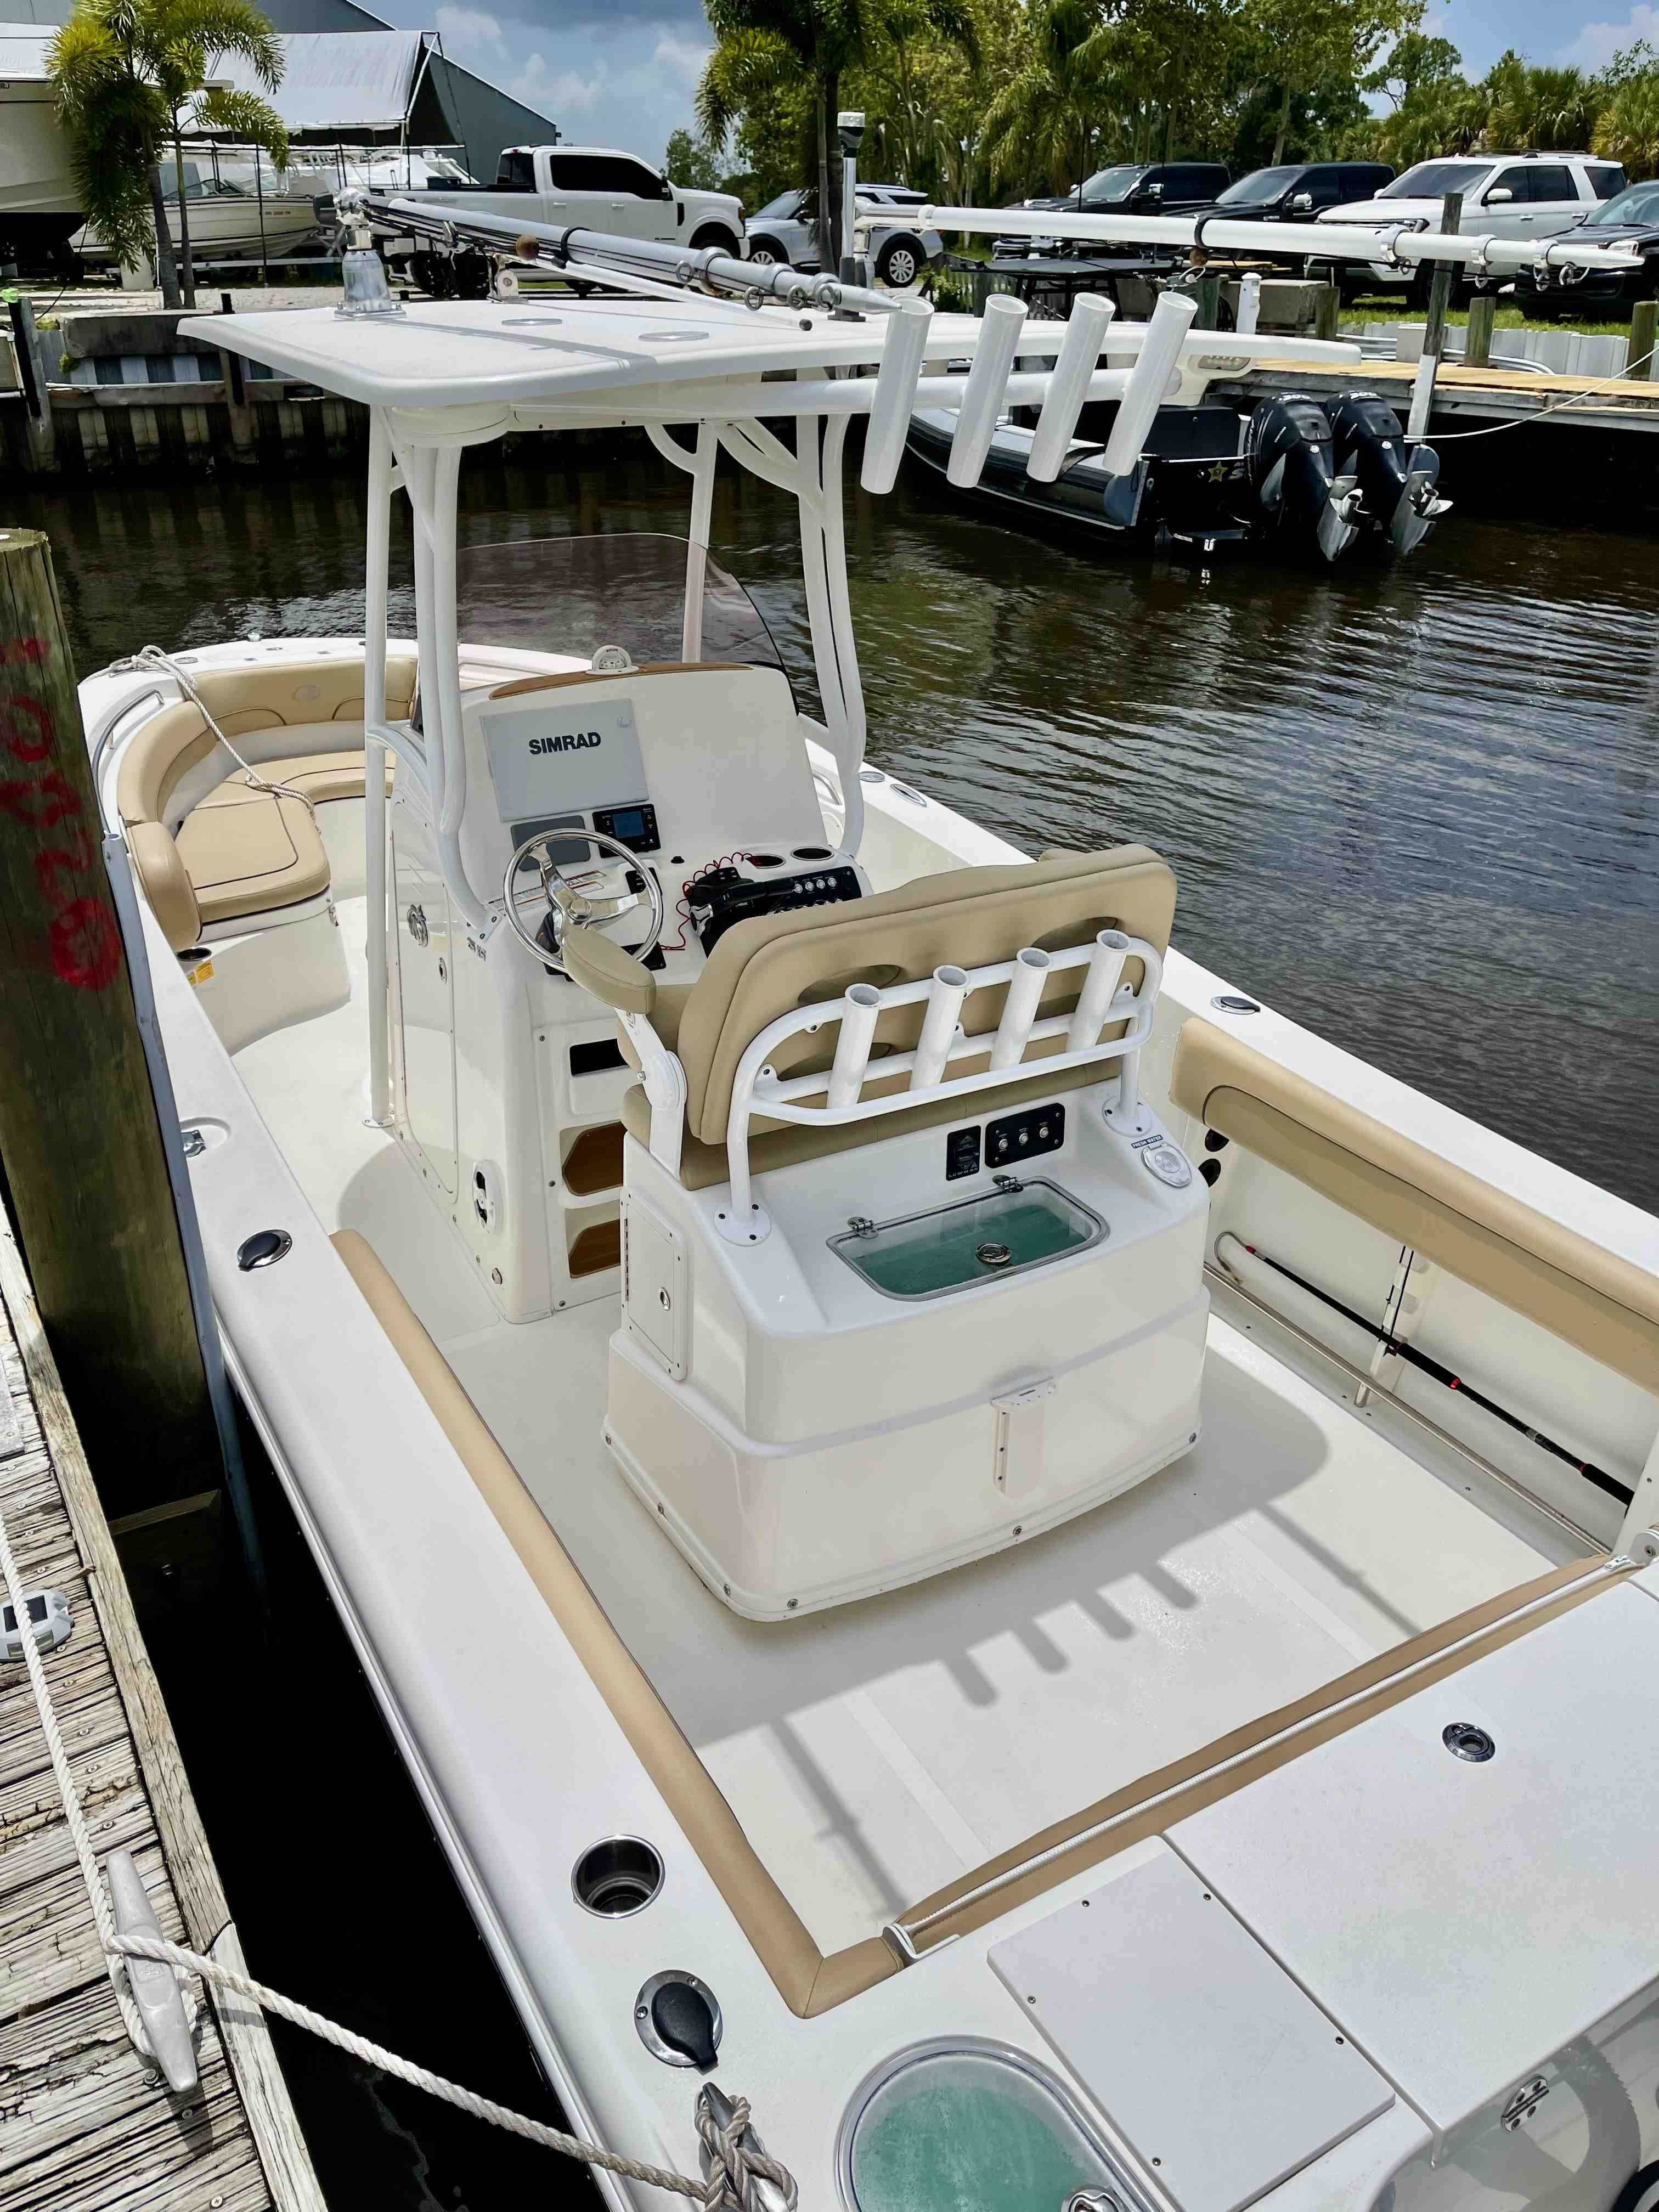  boat rentals Florida HOBE SOUND Florida  Nauticstar 25XS 2019 25 